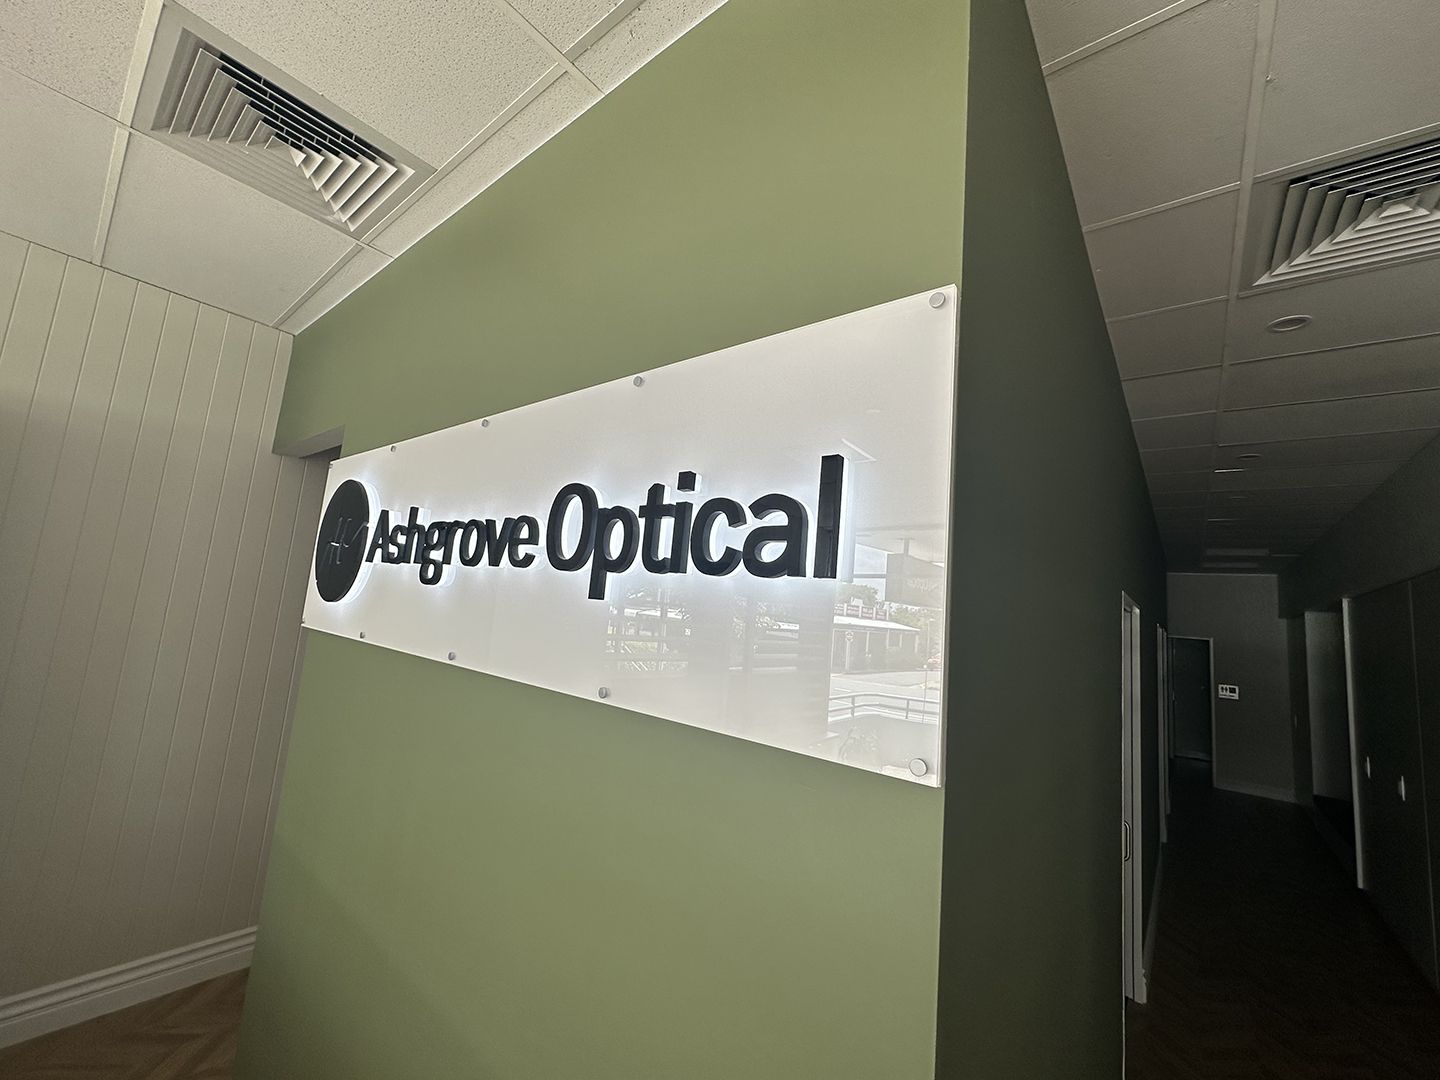 Ashgrove Optical 3D Printed Halo Illuminated Sign